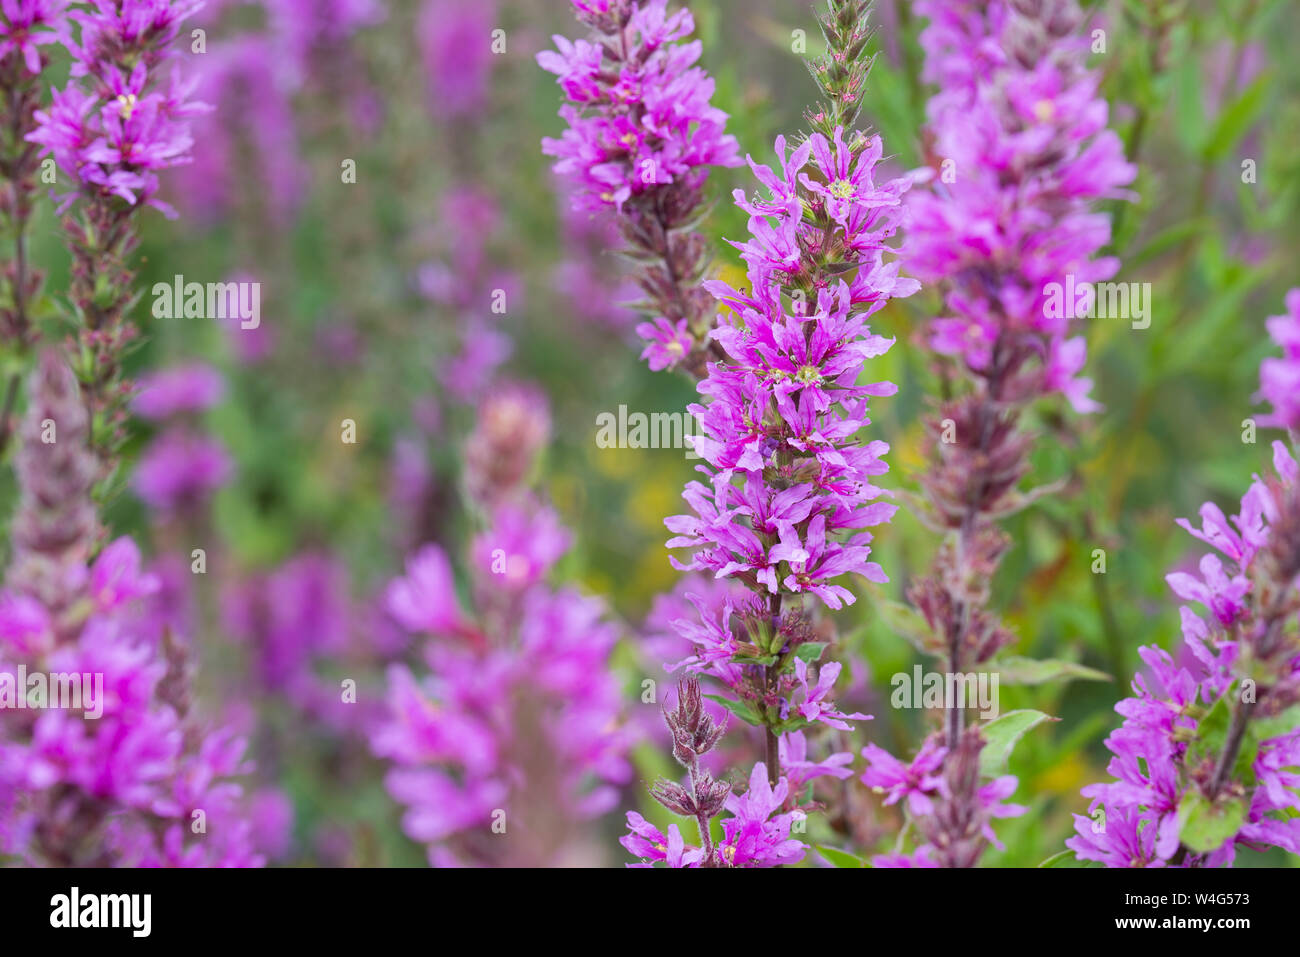 Lythrum salicaria, purple loosestrife flowers closeup Stock Photo